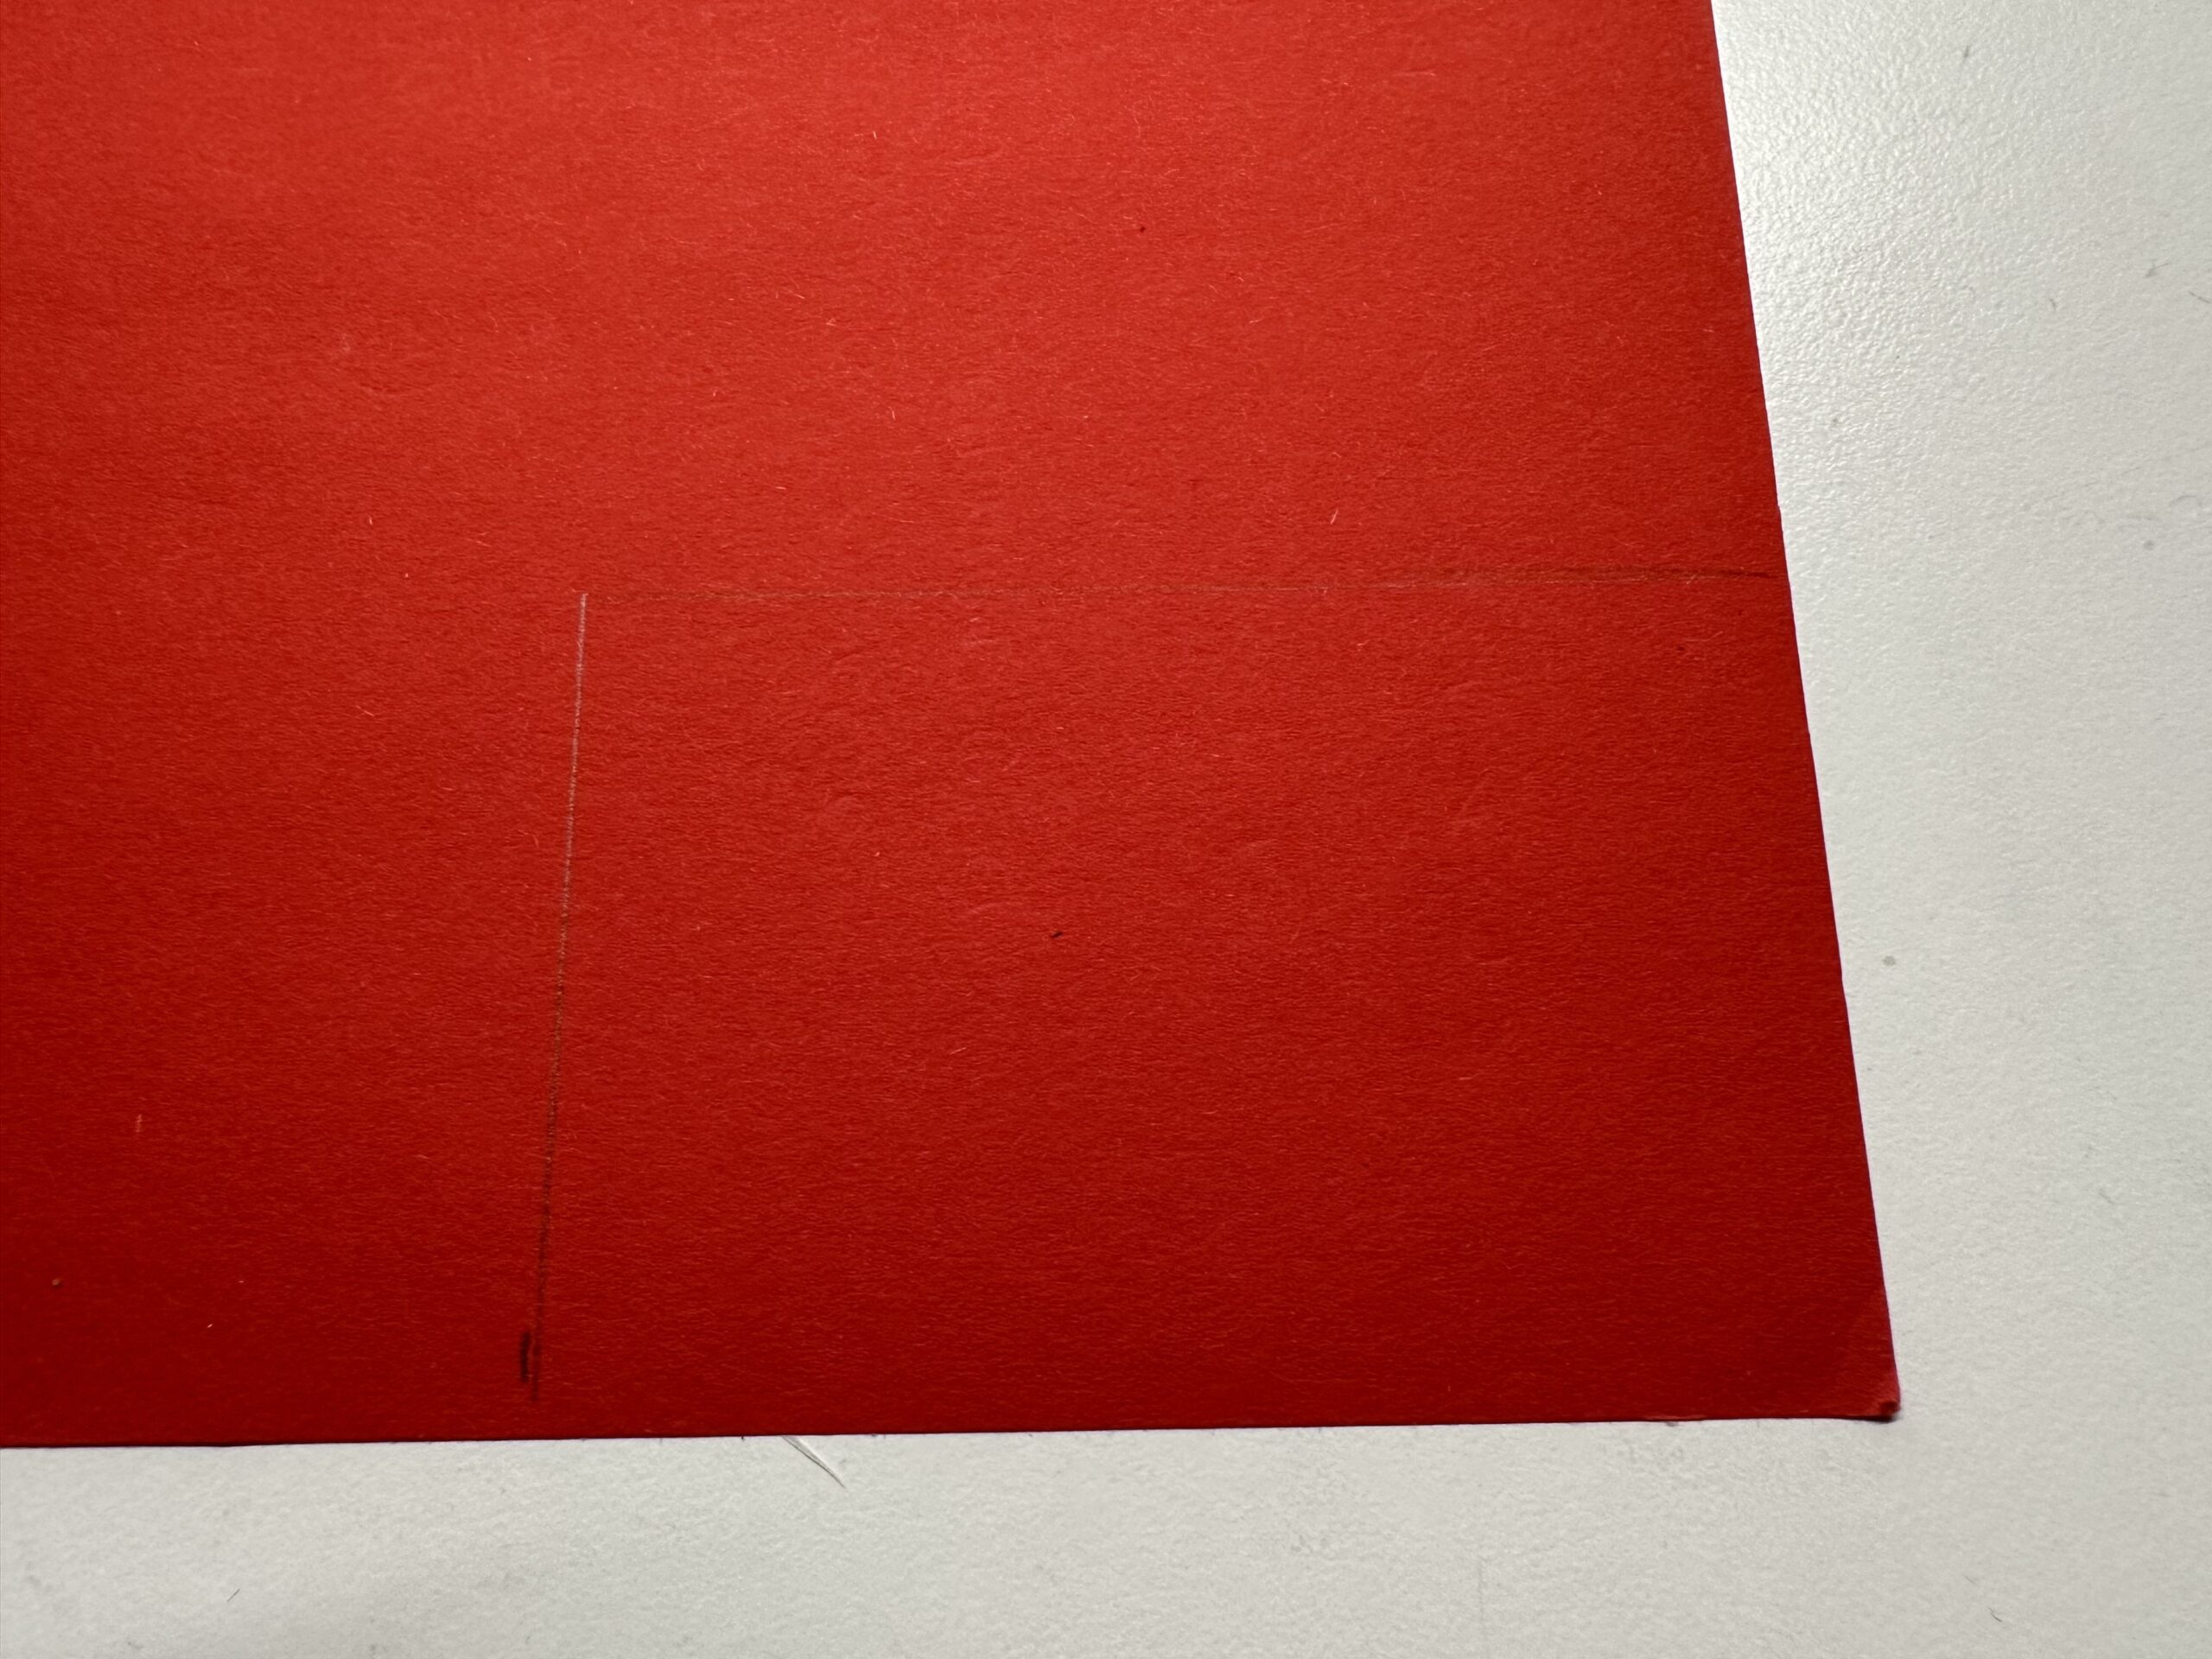 Bild zum Schritt 1 für das Bastel- und DIY-Abenteuer für Kinder: 'Nehmt euer rotes Tonpapier und messt zwei gleiche Rechtecke ab....'